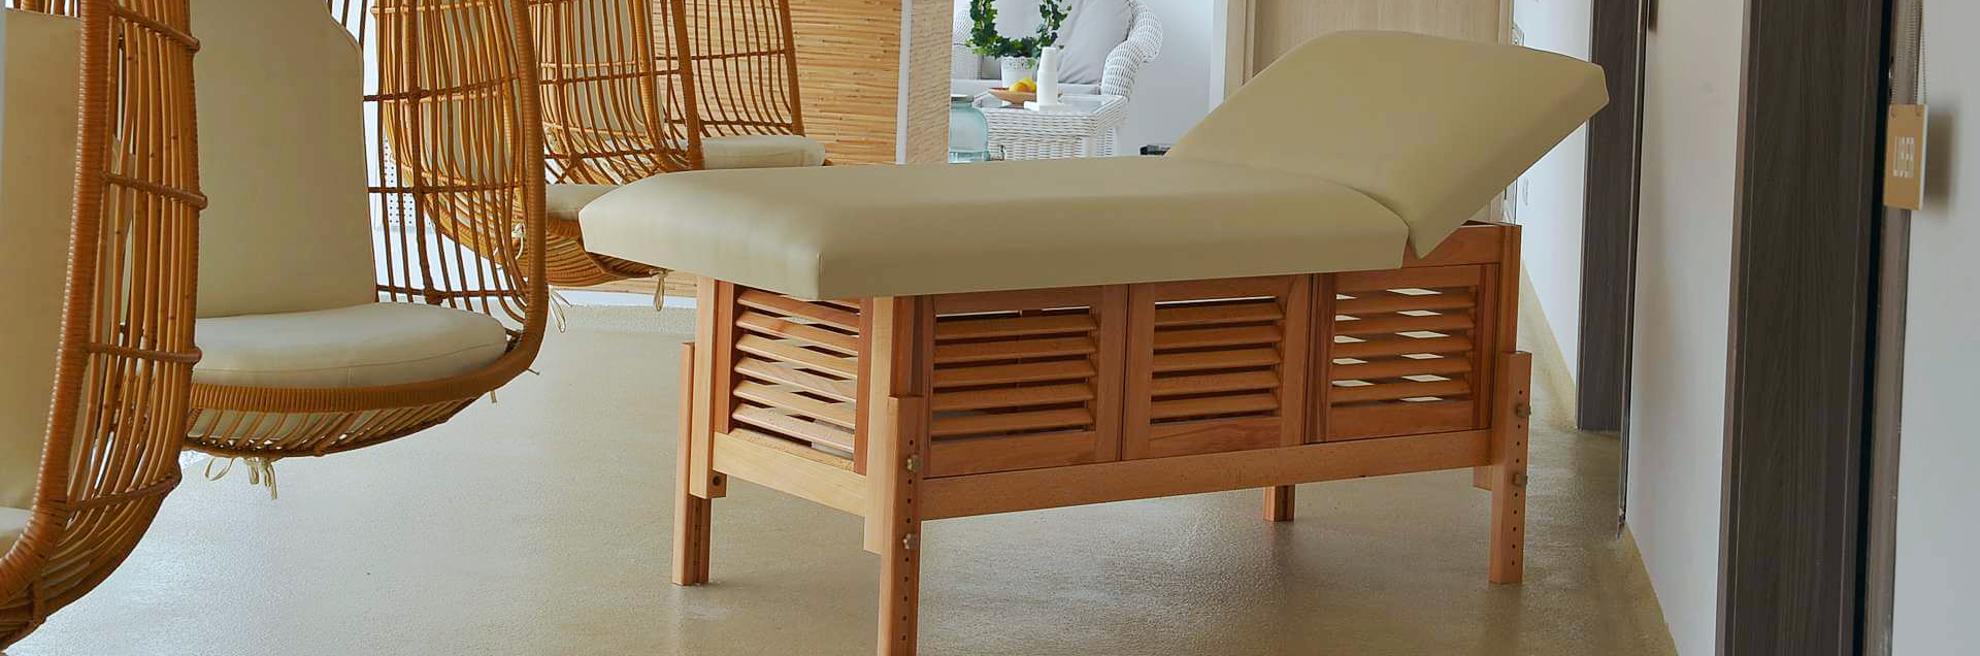 Masă de masaj staționară, model Laguna, de la BIOS, pernă două secțiuni, tapițerie galben-piersică, finisaj lemn natur